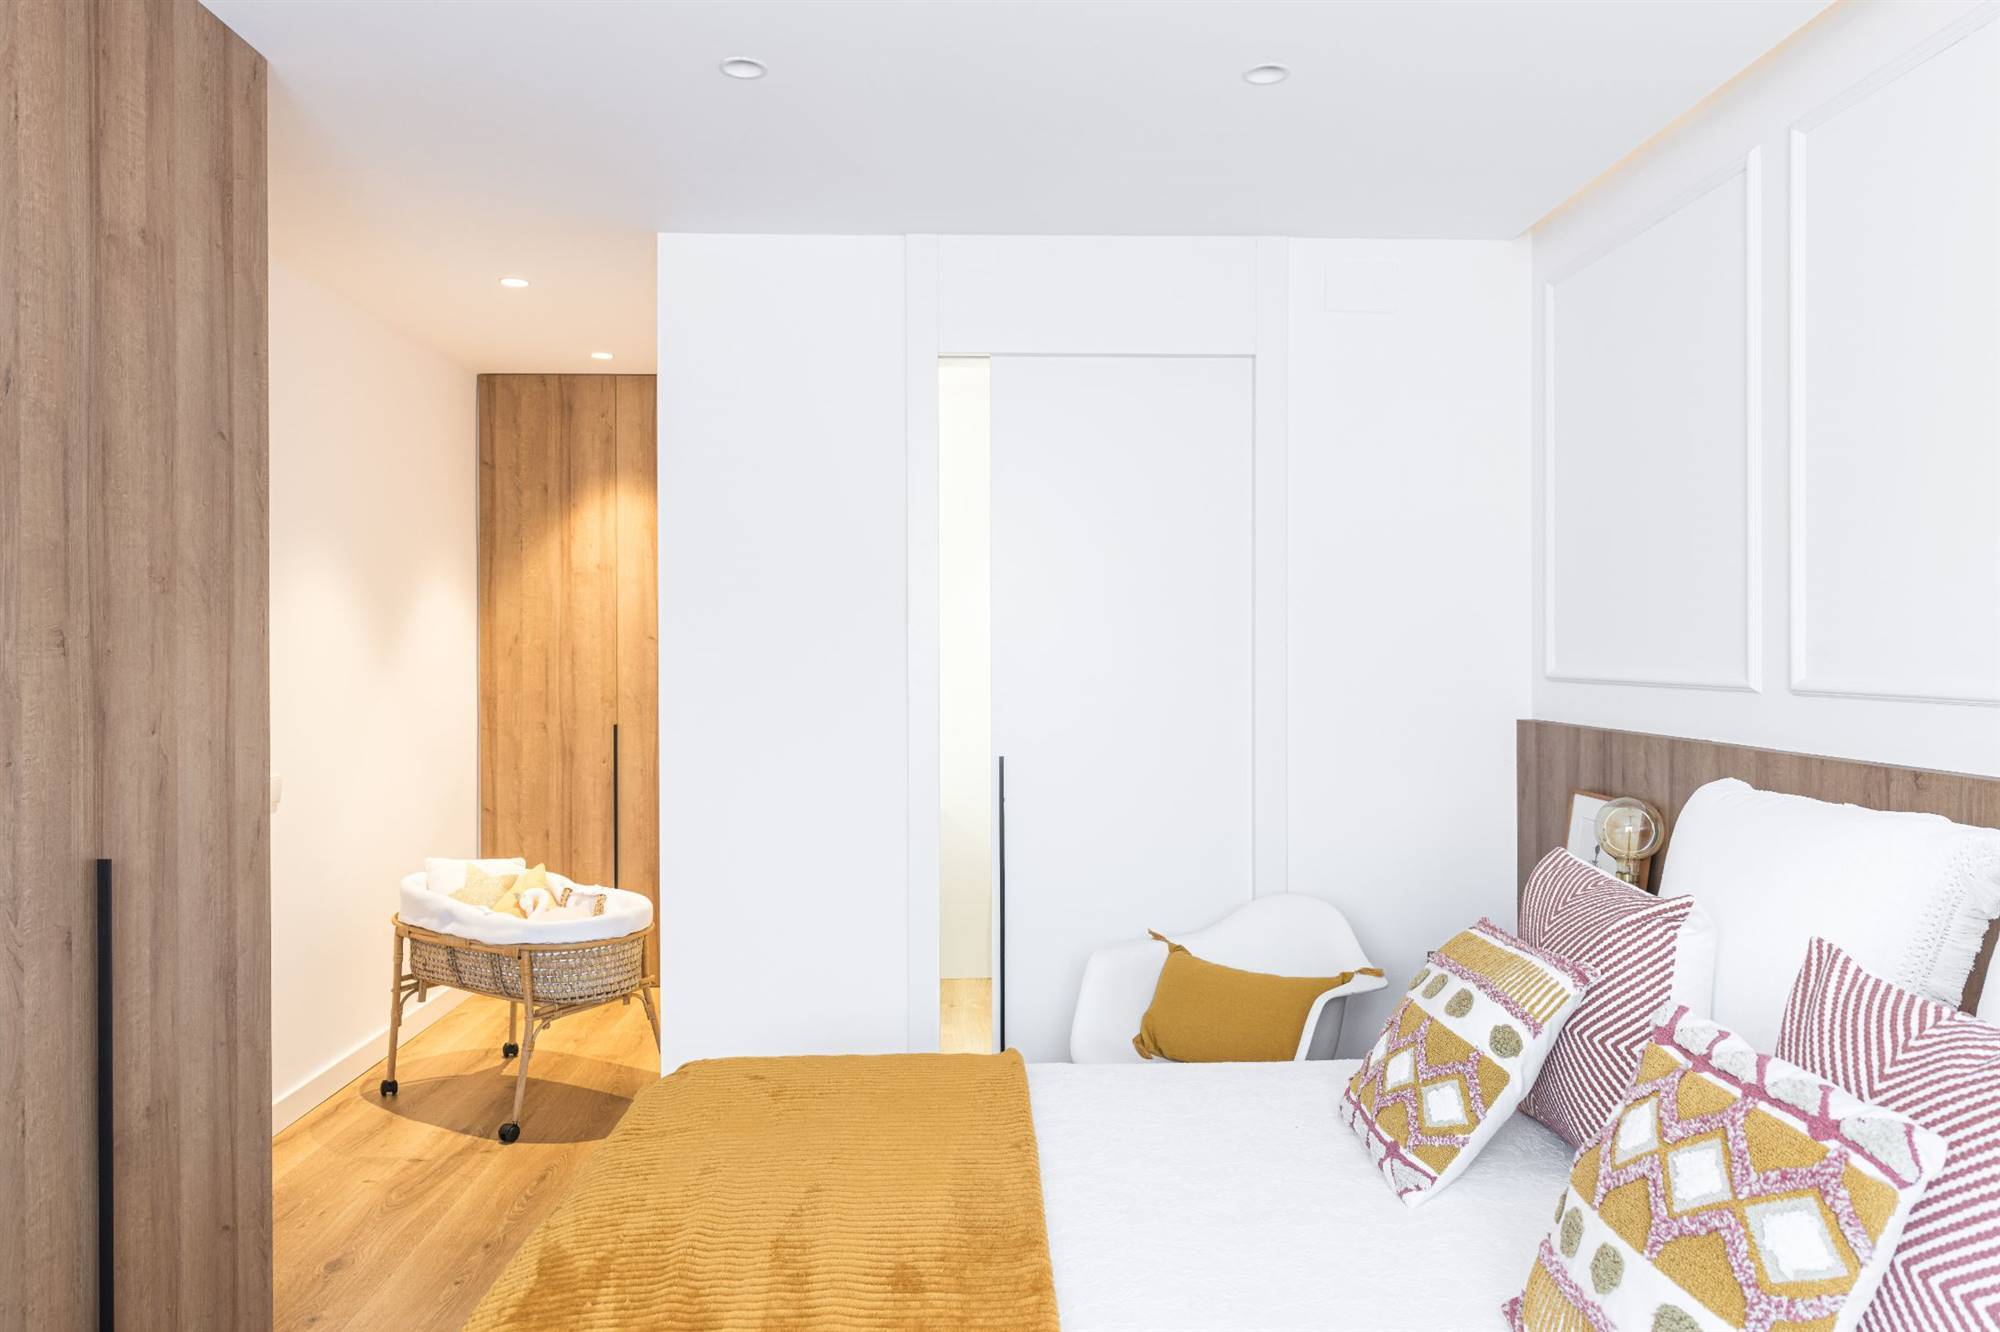 Dormitorio principal después de la reforma con armario y suelos de madera, ropa de cama con detalles mostaza y baño privado. 